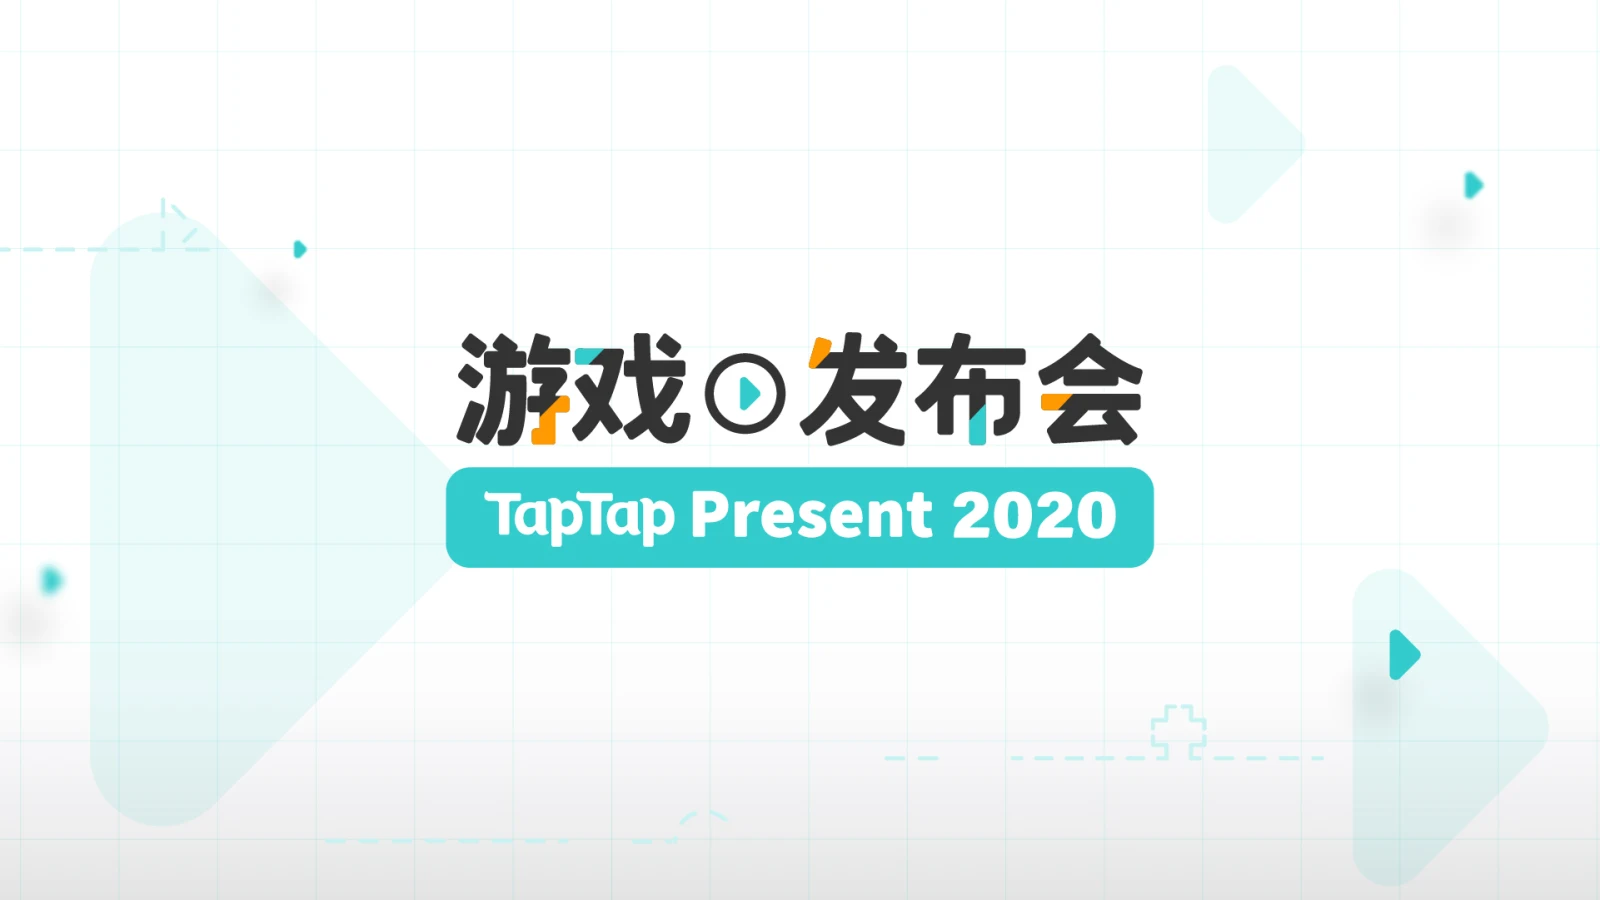 TapTap举办首届线上发布会，数十款游戏公布最新资讯